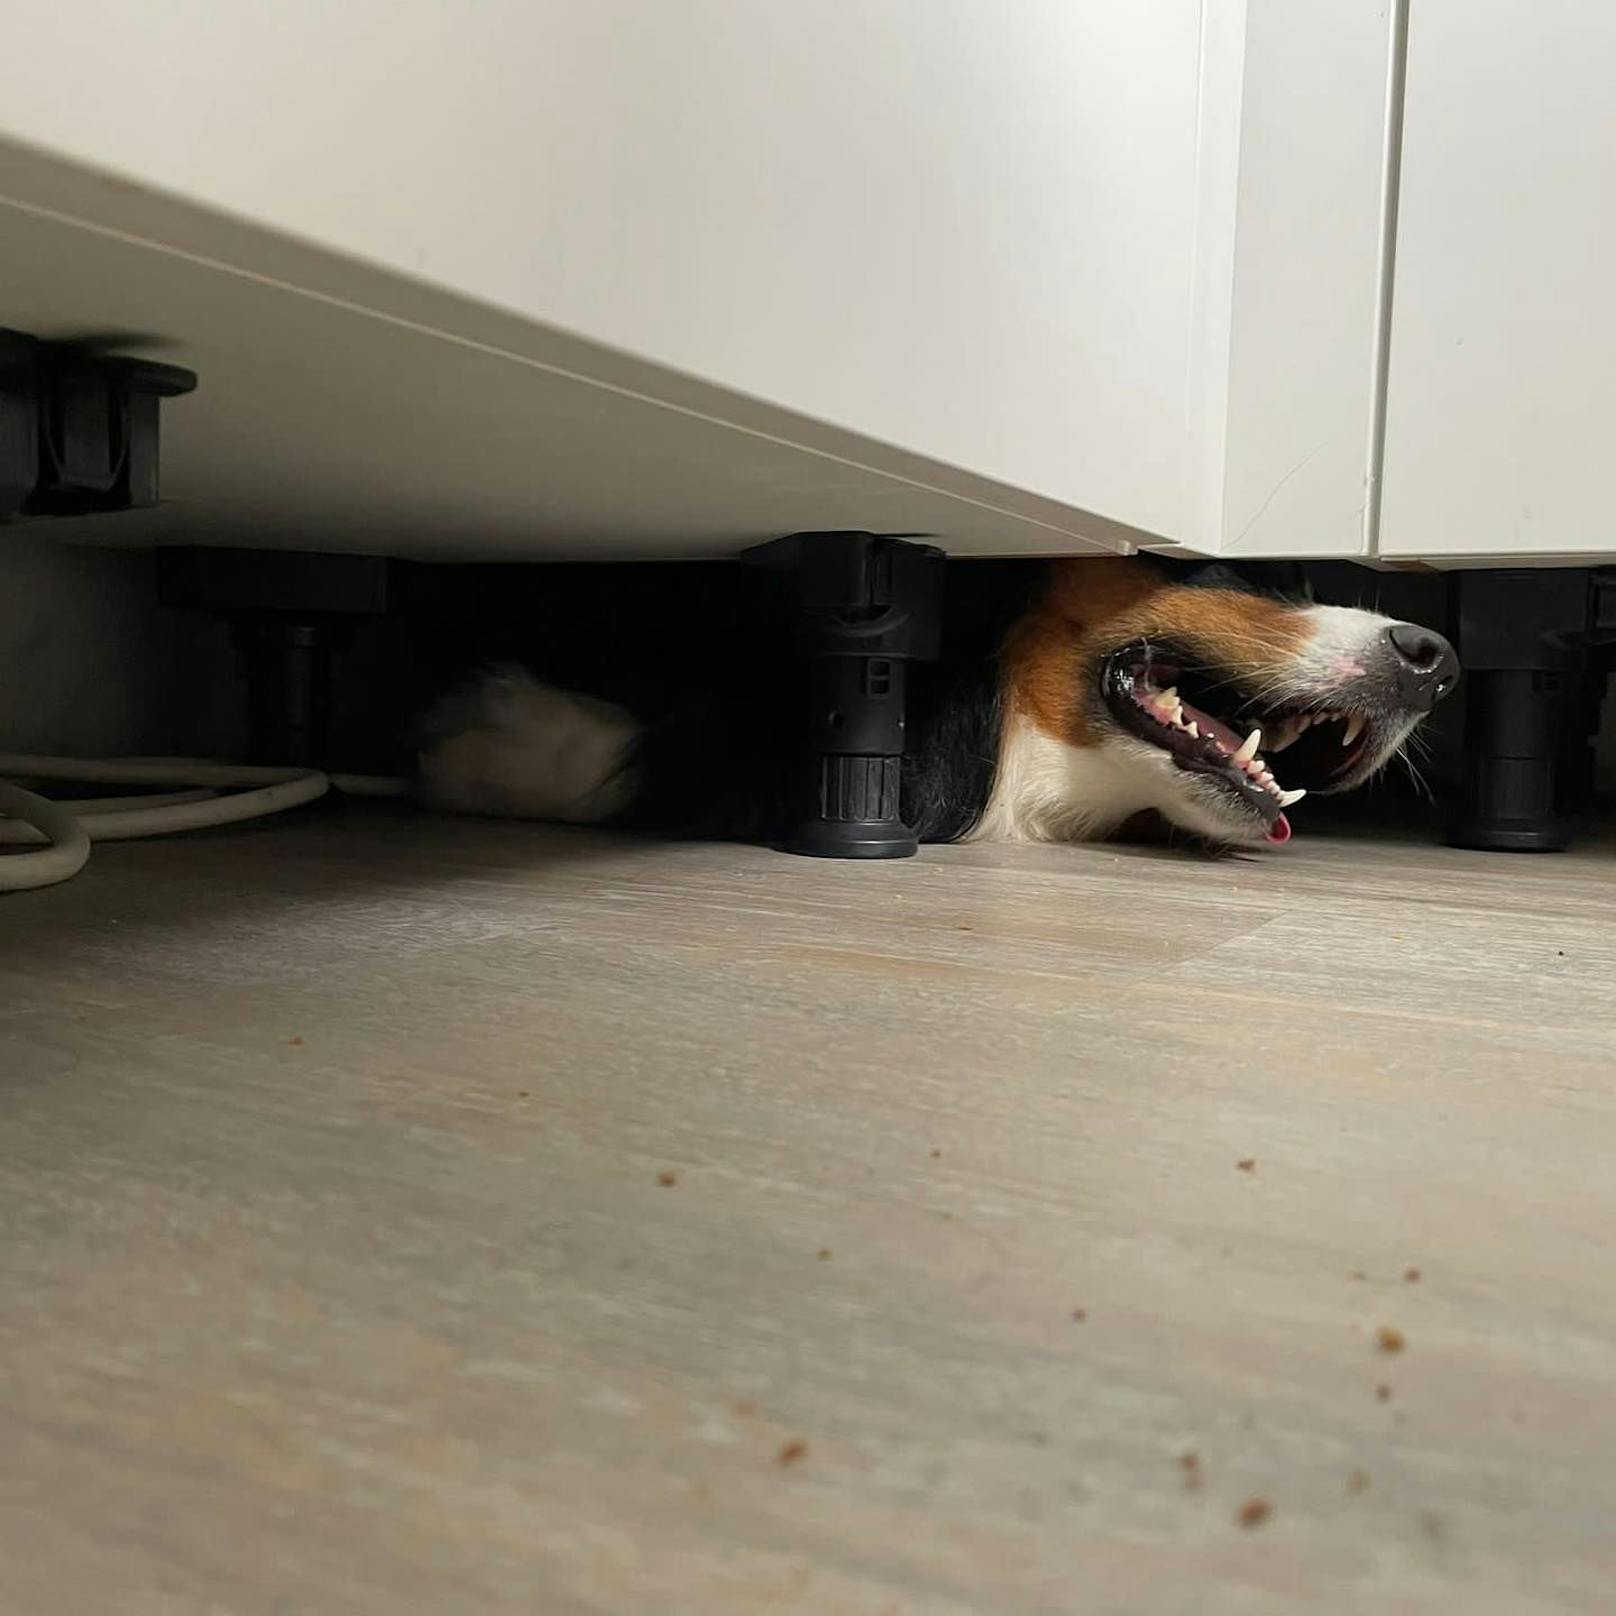 Weil es unter den Küchenschränken gut roch, robbte der Australian Shepherd "Paul" unter die Küchenzeile und blieb stecken. 